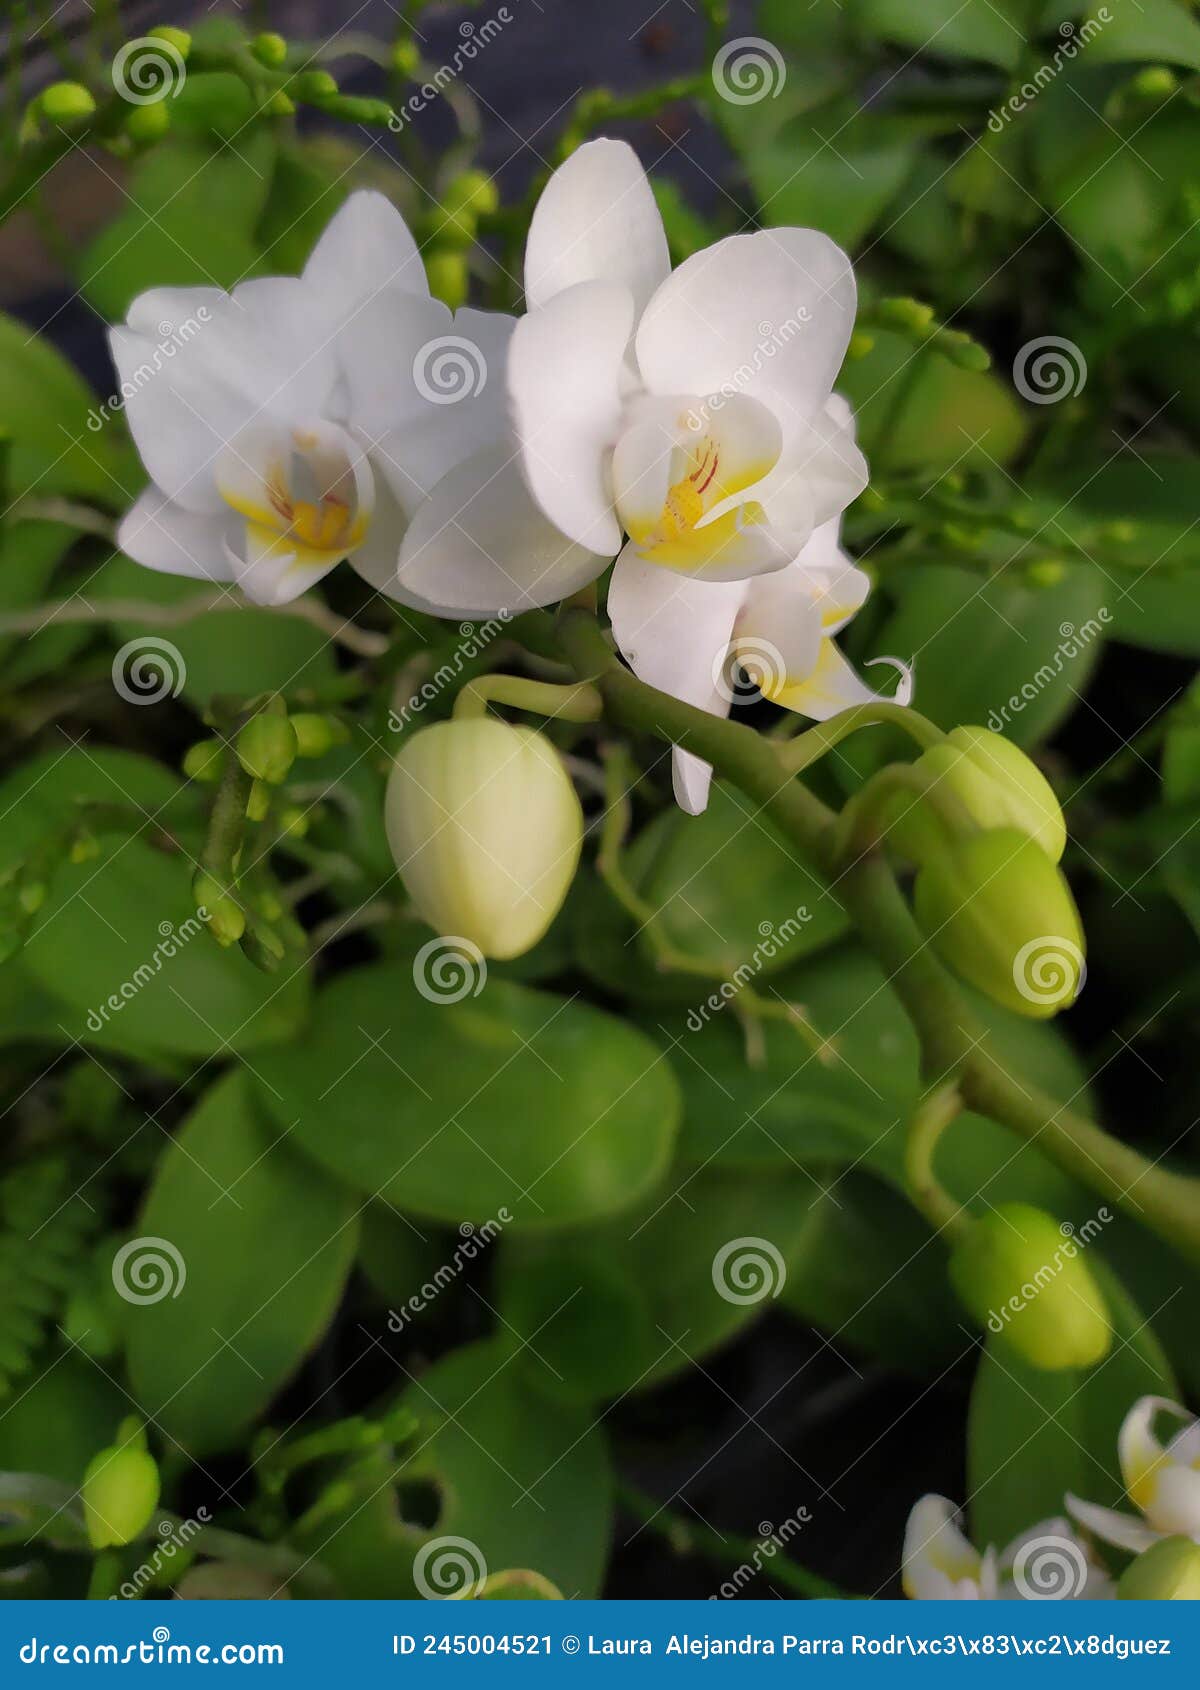 a few buds of white orchids. detalle de varios capullos y de orquÃÂ­deas blancas